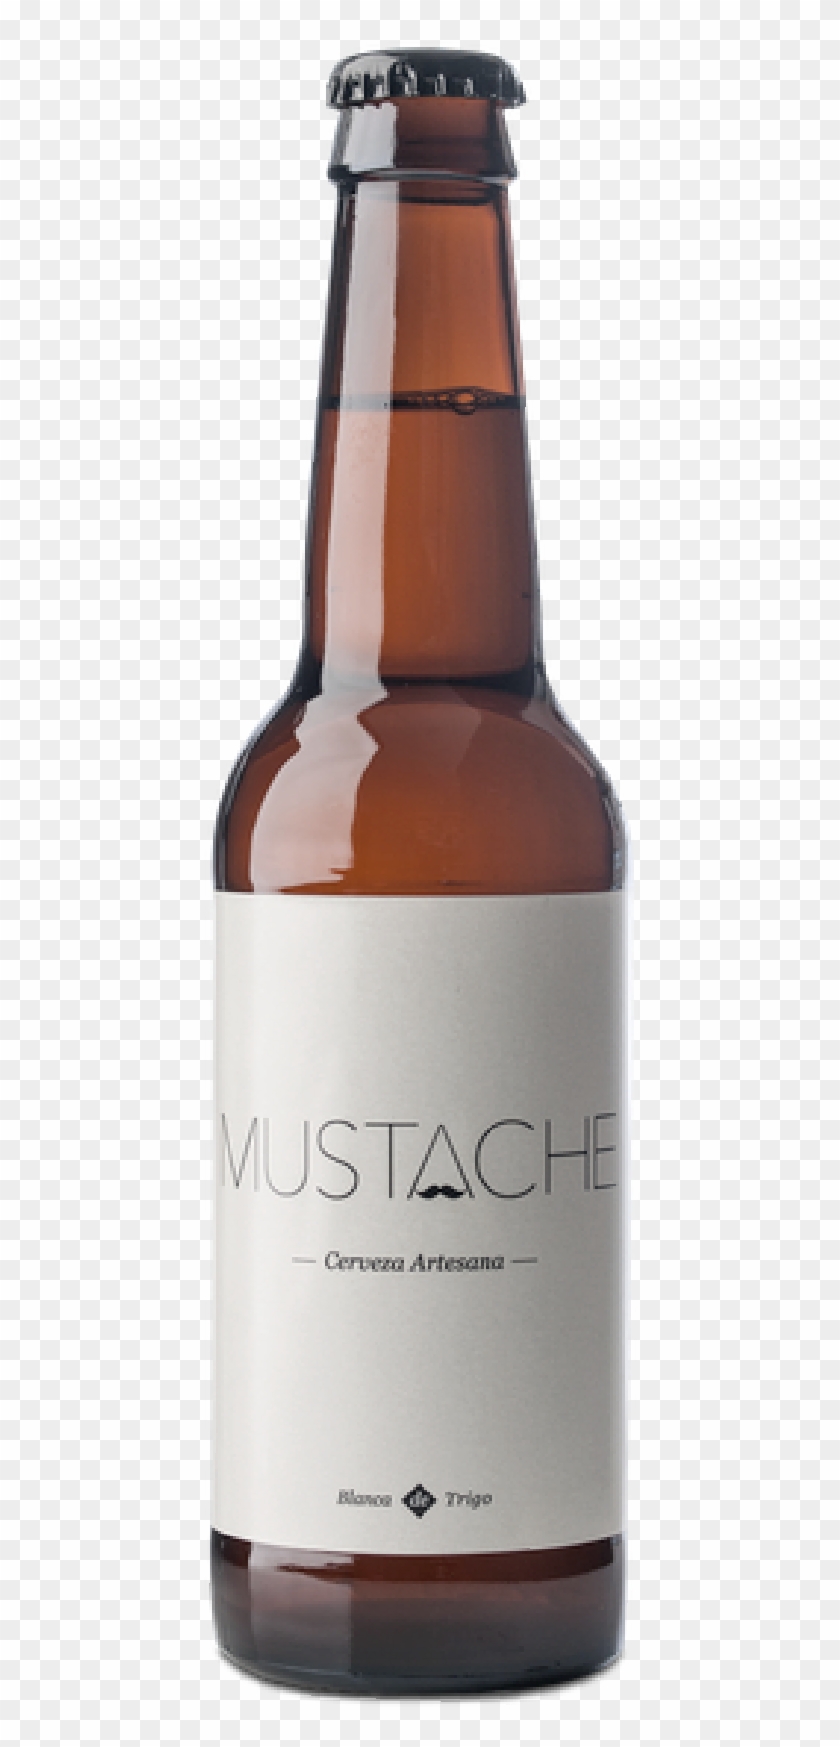 Mustache Blanca De Trigo - Beer Bottle Clipart #2197818